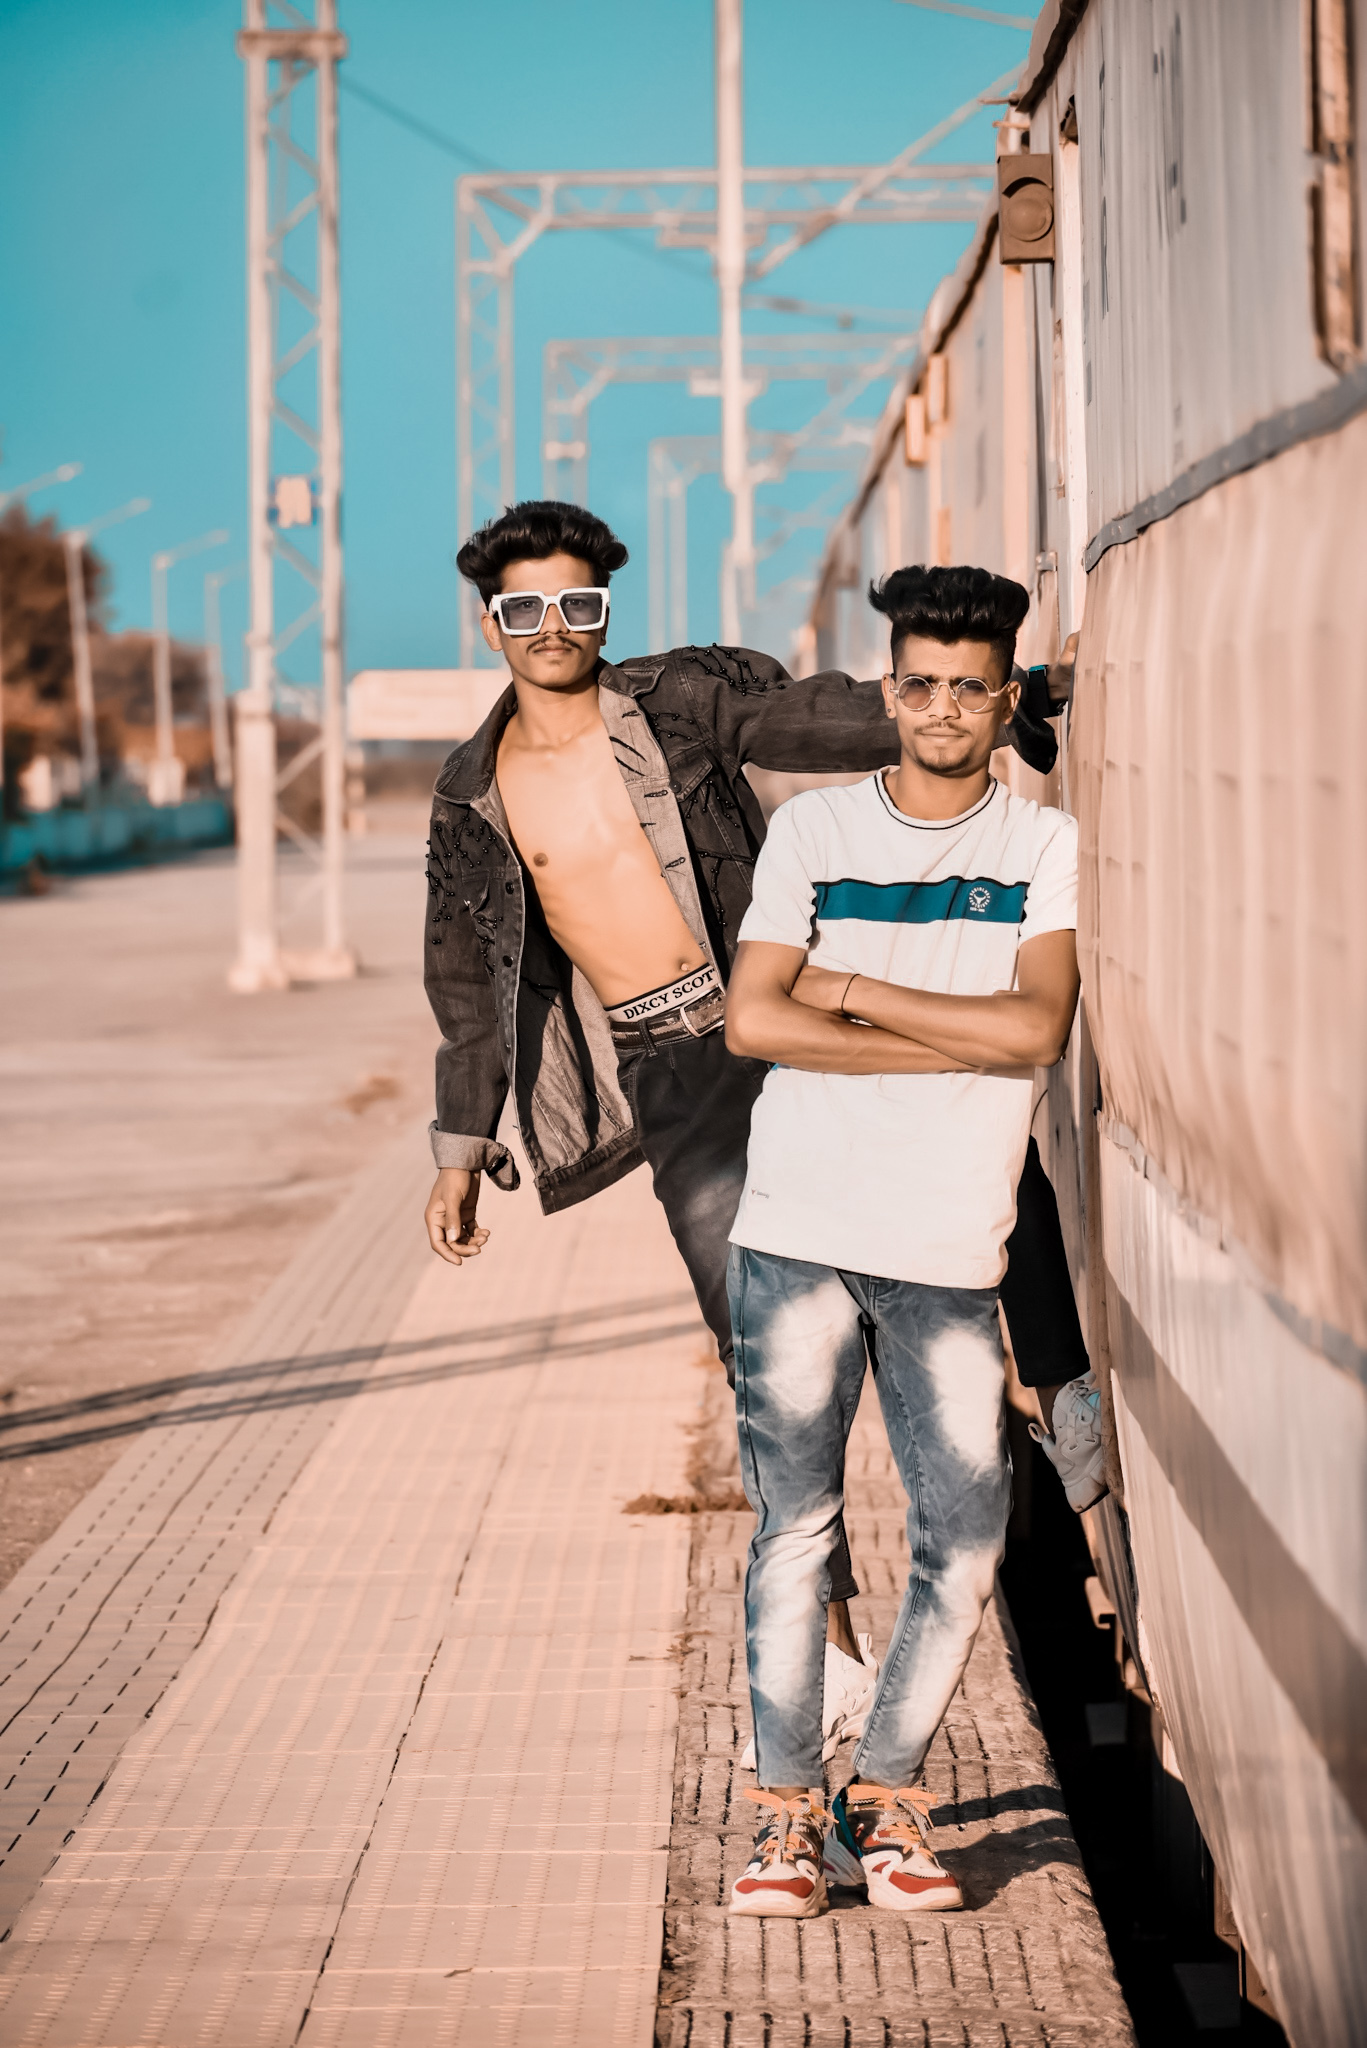 Two boys posing roadside